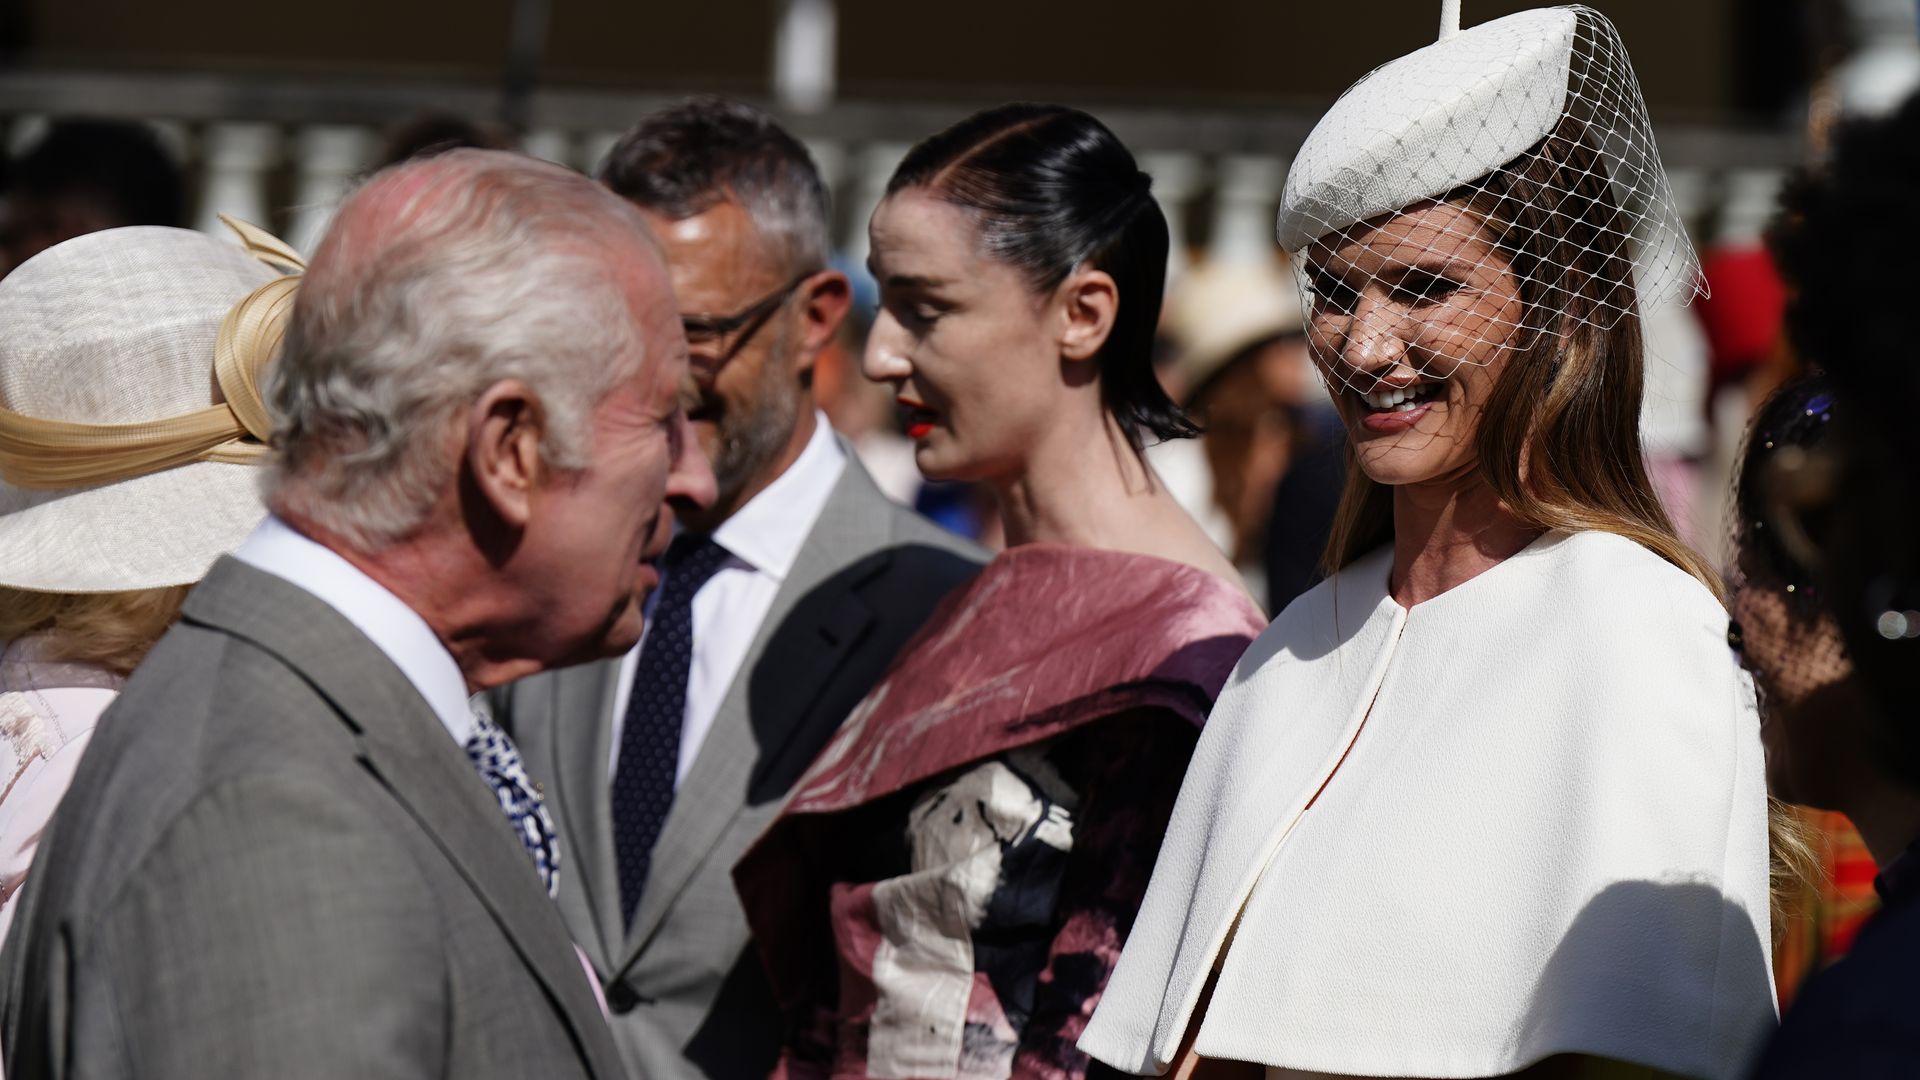 King Charles III speaks with Rosie Huntington-Whiteley